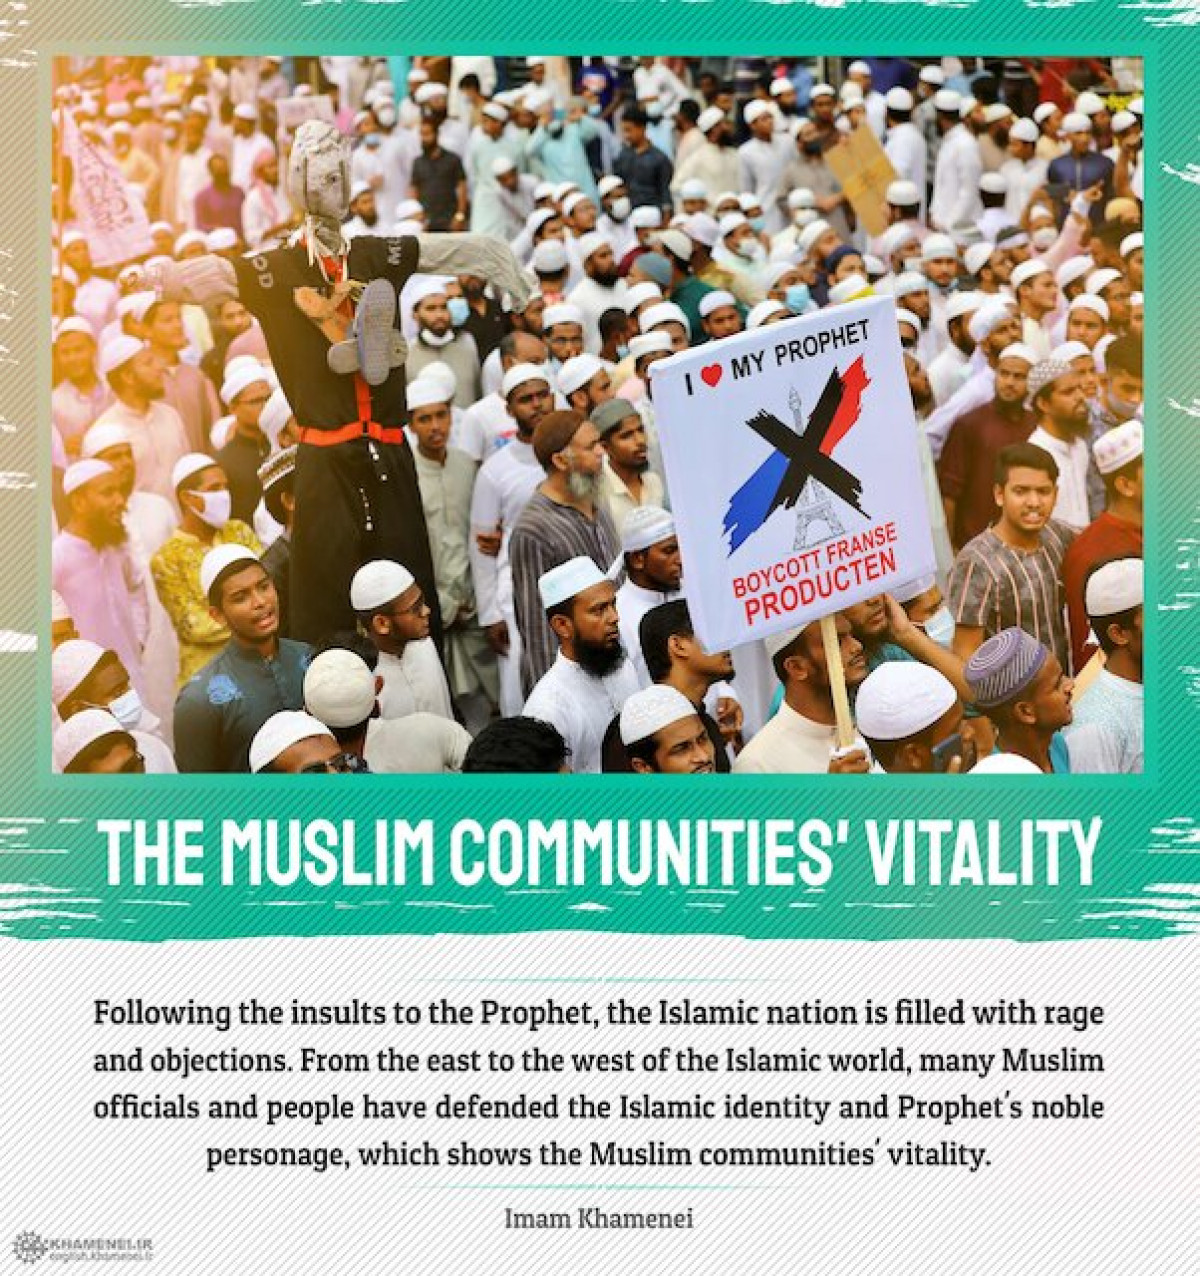 The Muslim communities' vitality